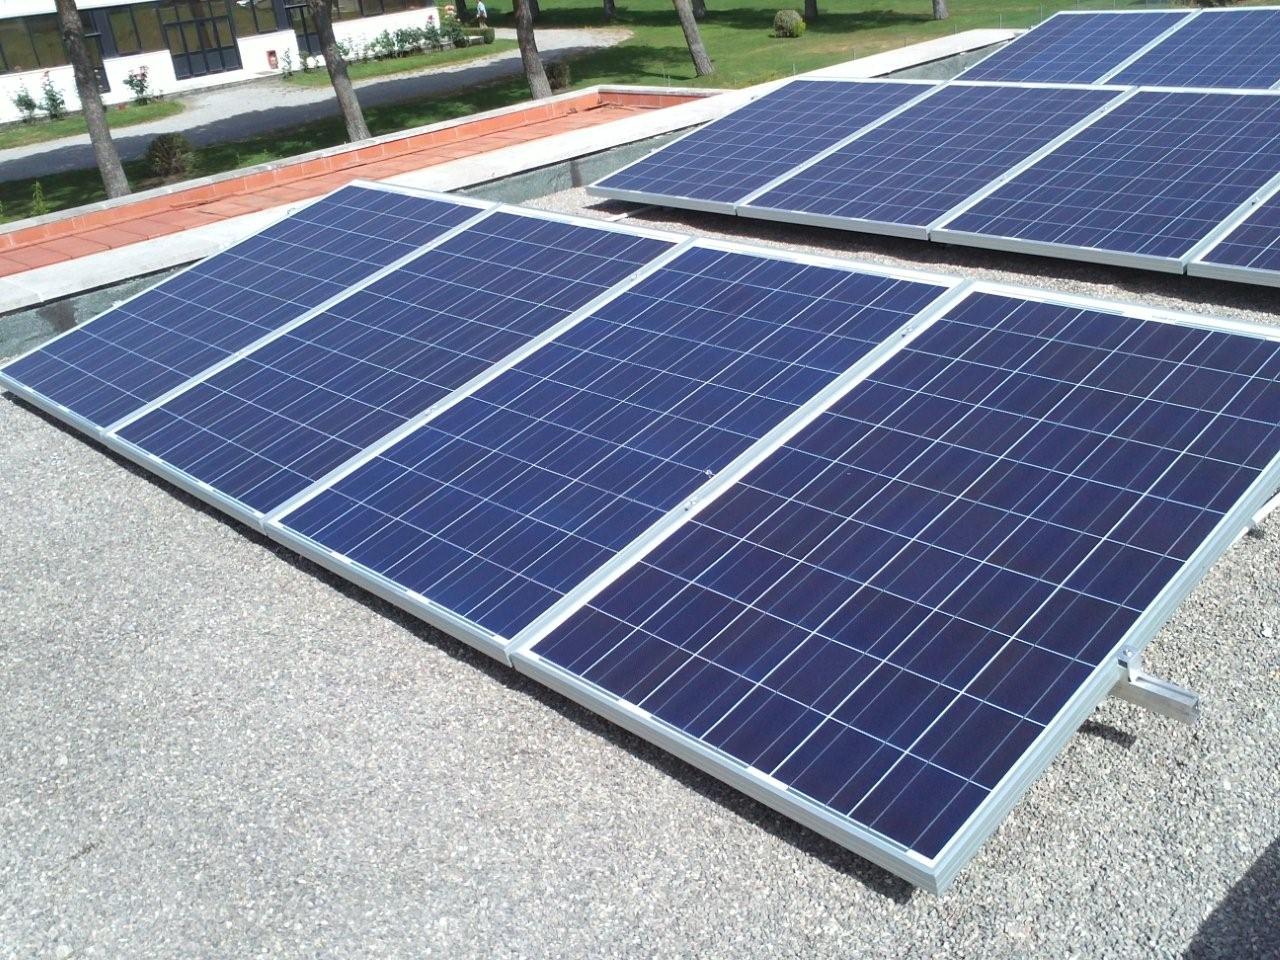 Impianto Impianti Solari Fotovoltaici 2016. Cogli le opportunità e la convenienza Rapolano Terme Milano